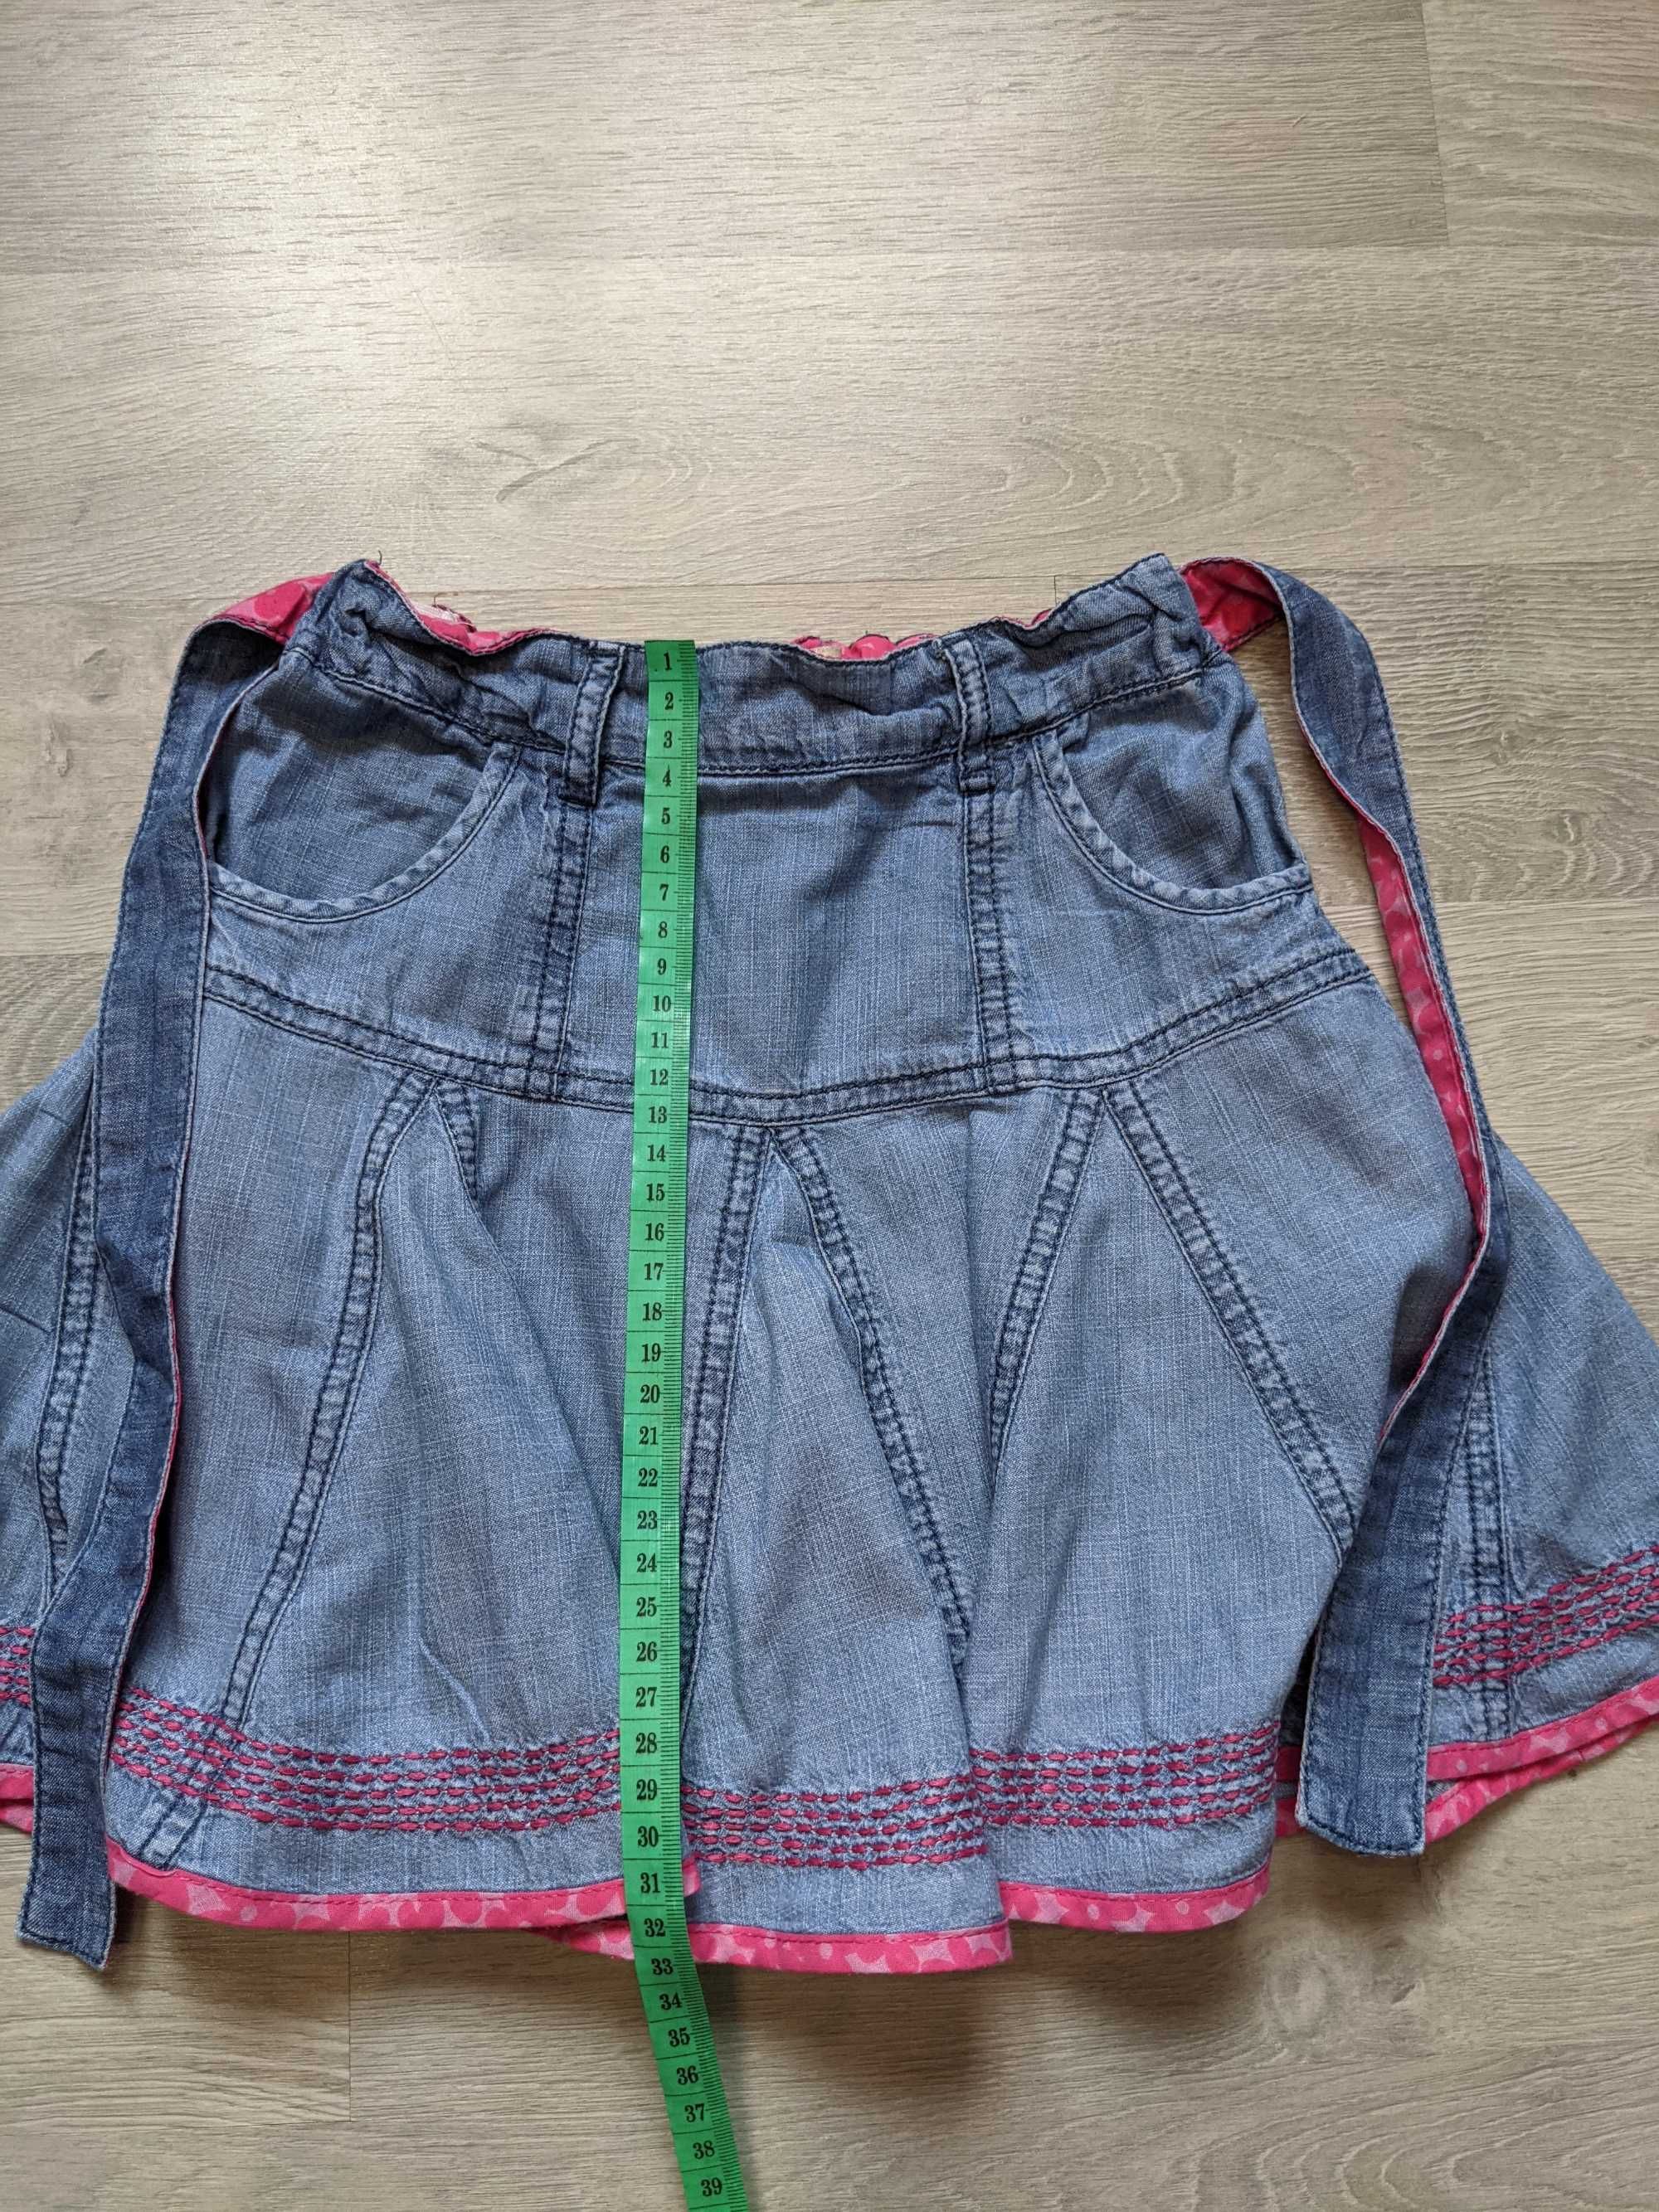 Фирменная джинсовая юбка Mark&Senser в садик, размер 98-104см/3-4 года